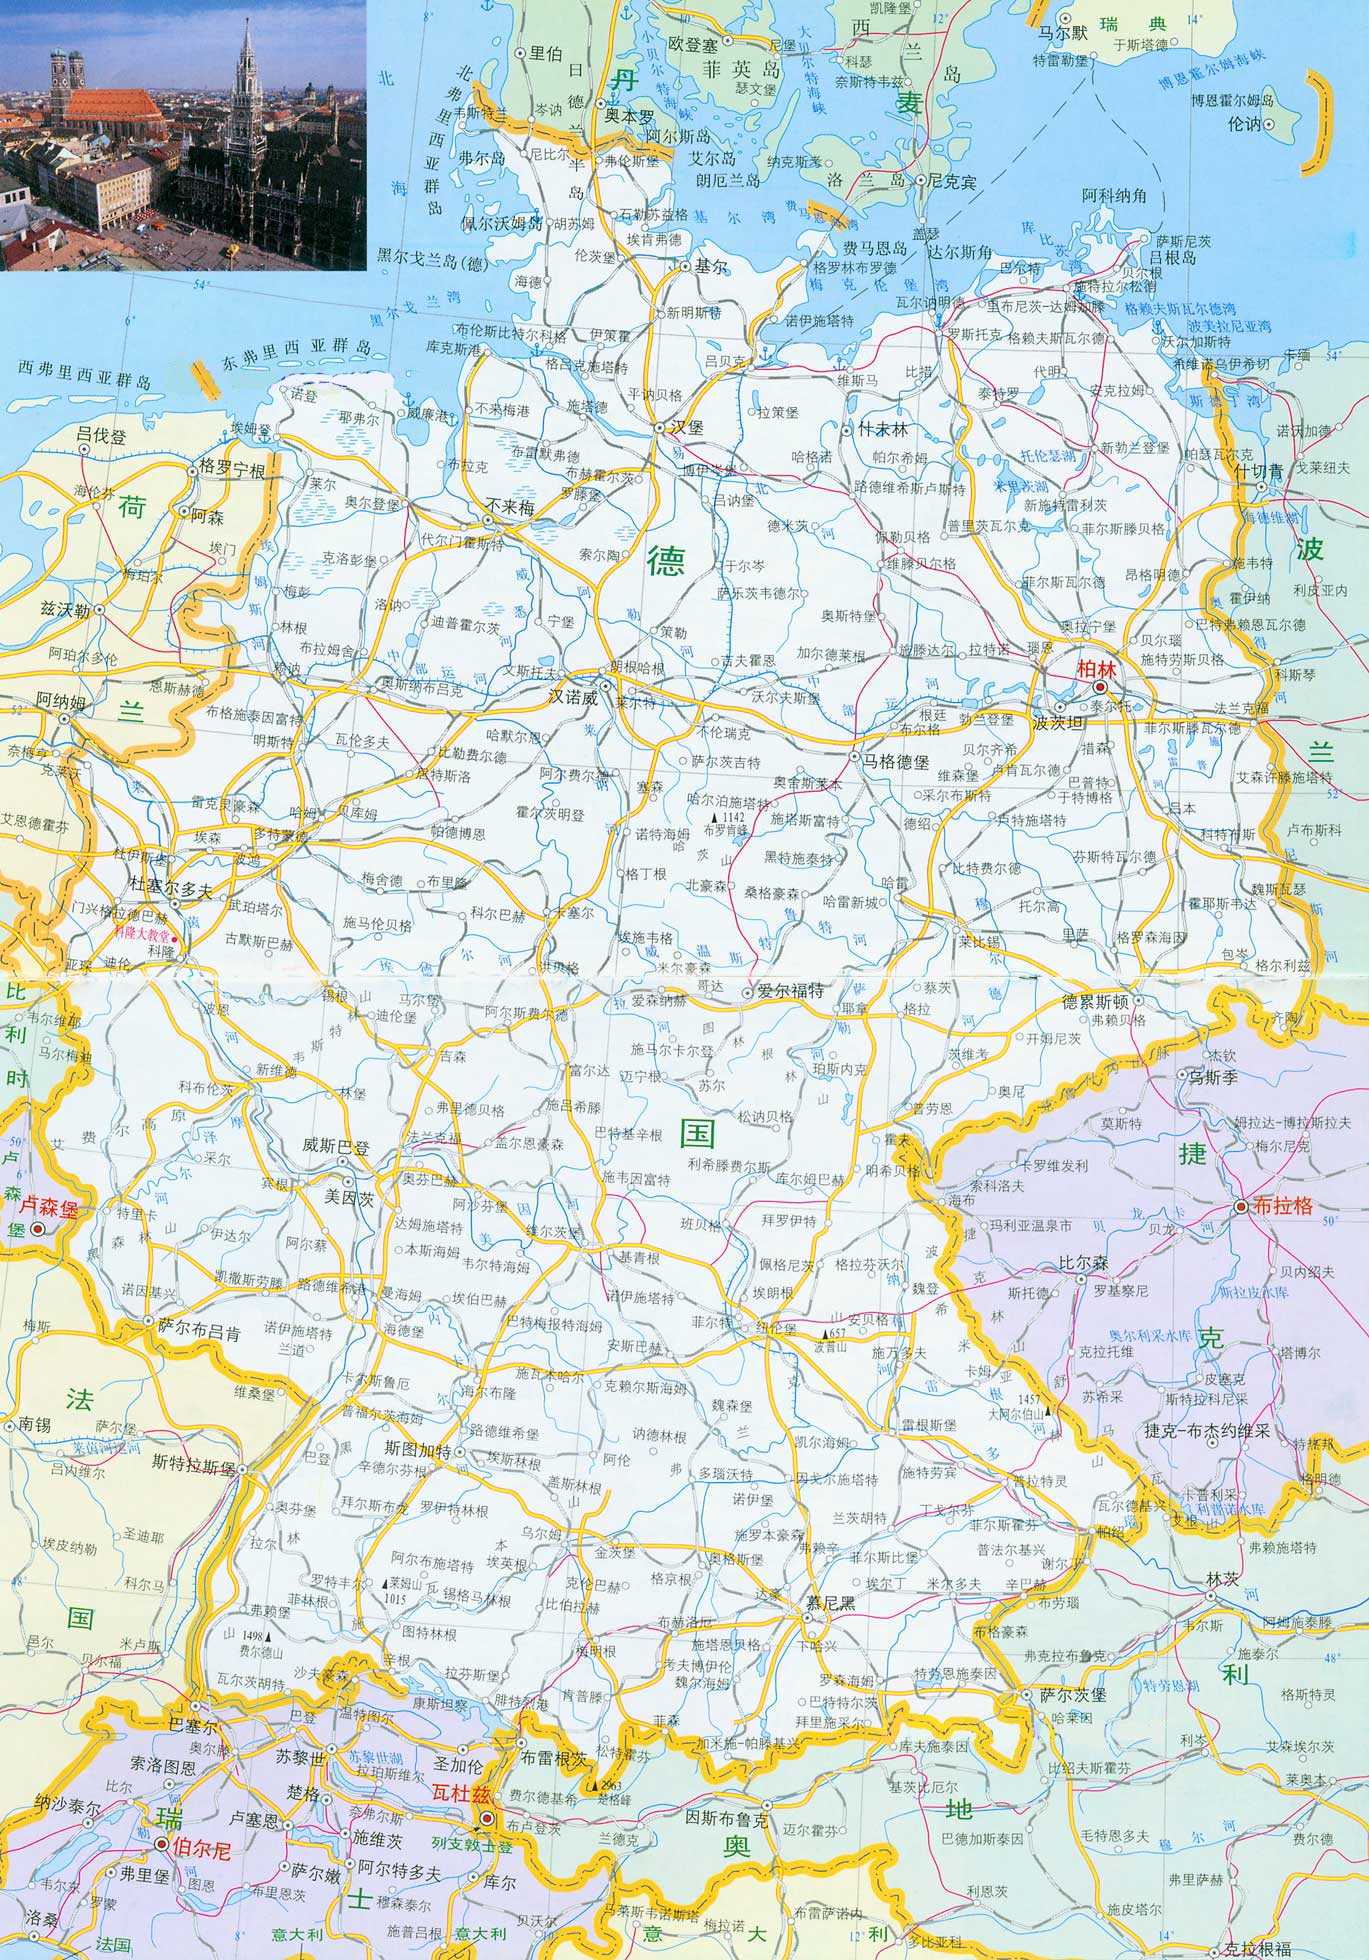 德国轮廓图_德国地图空白轮廓图_微信公众号文章